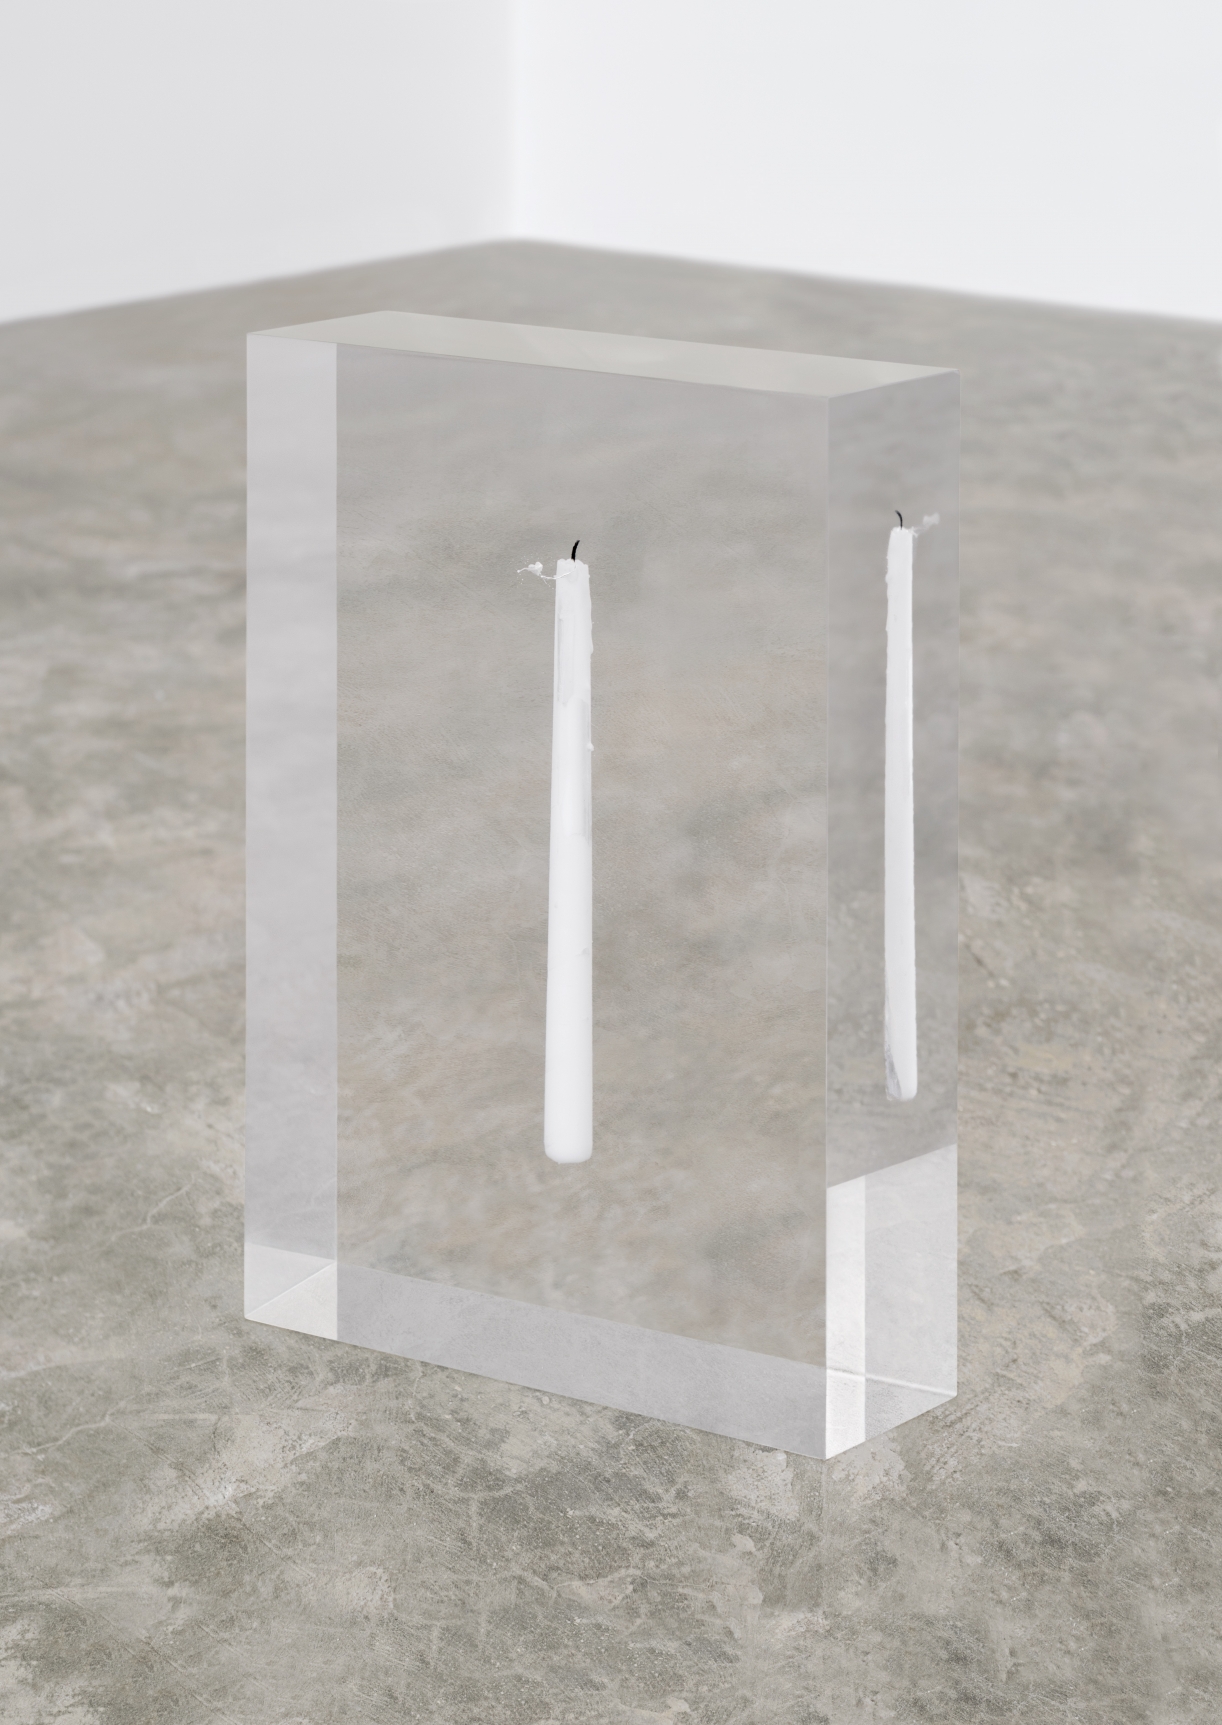 Tarik Kiswanson, Respite, 2020, Clear resin cast with candle, unique, 40 x 28 x 9 cm